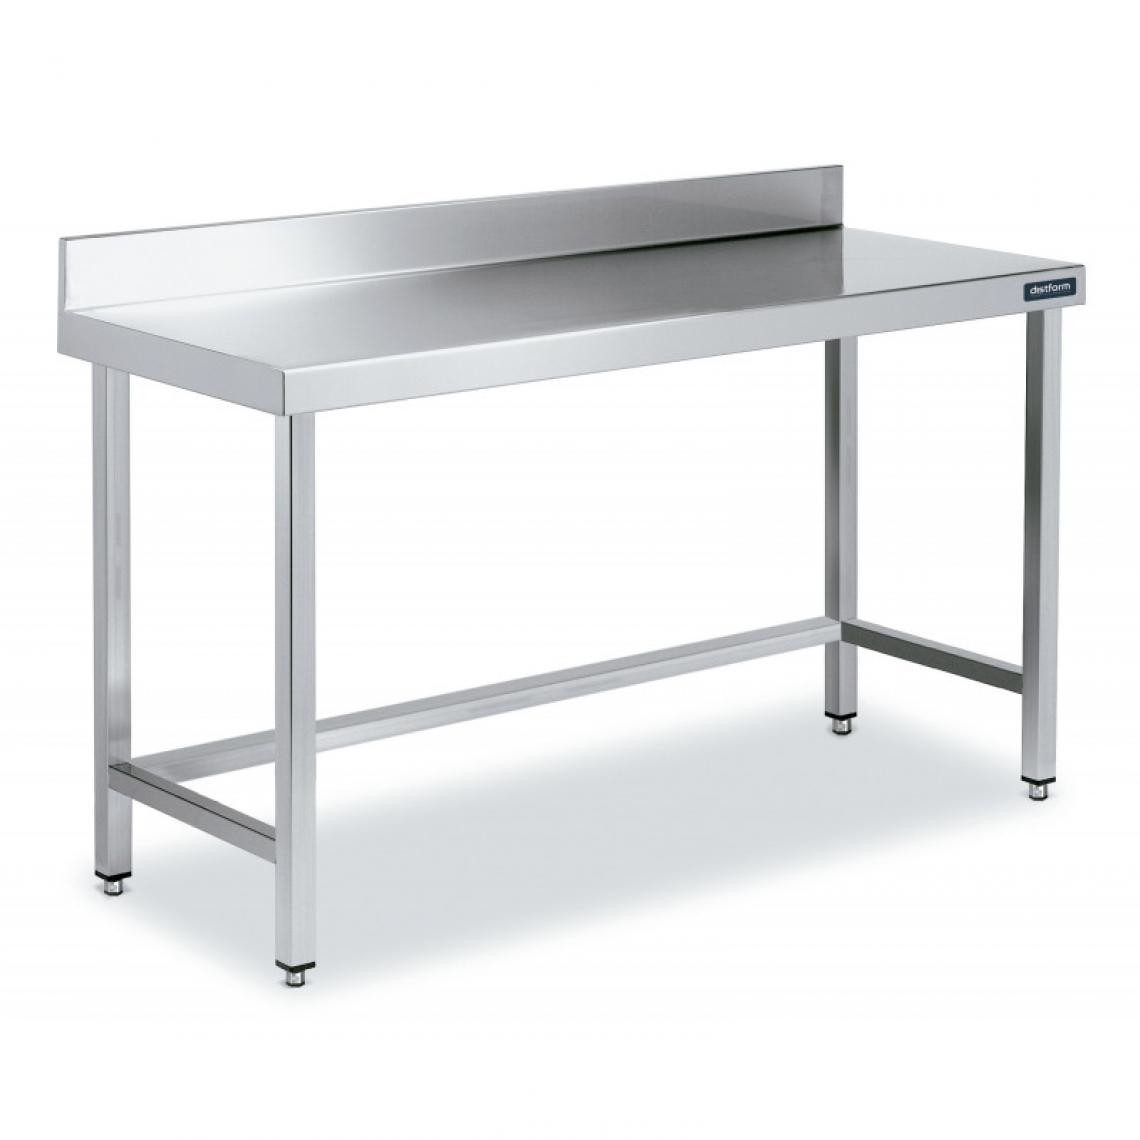 DISTFORM - Table Inox de Travail avec Dosseret Gamme 800 - Distform - Acier inoxydable1500x800 - Tables à manger